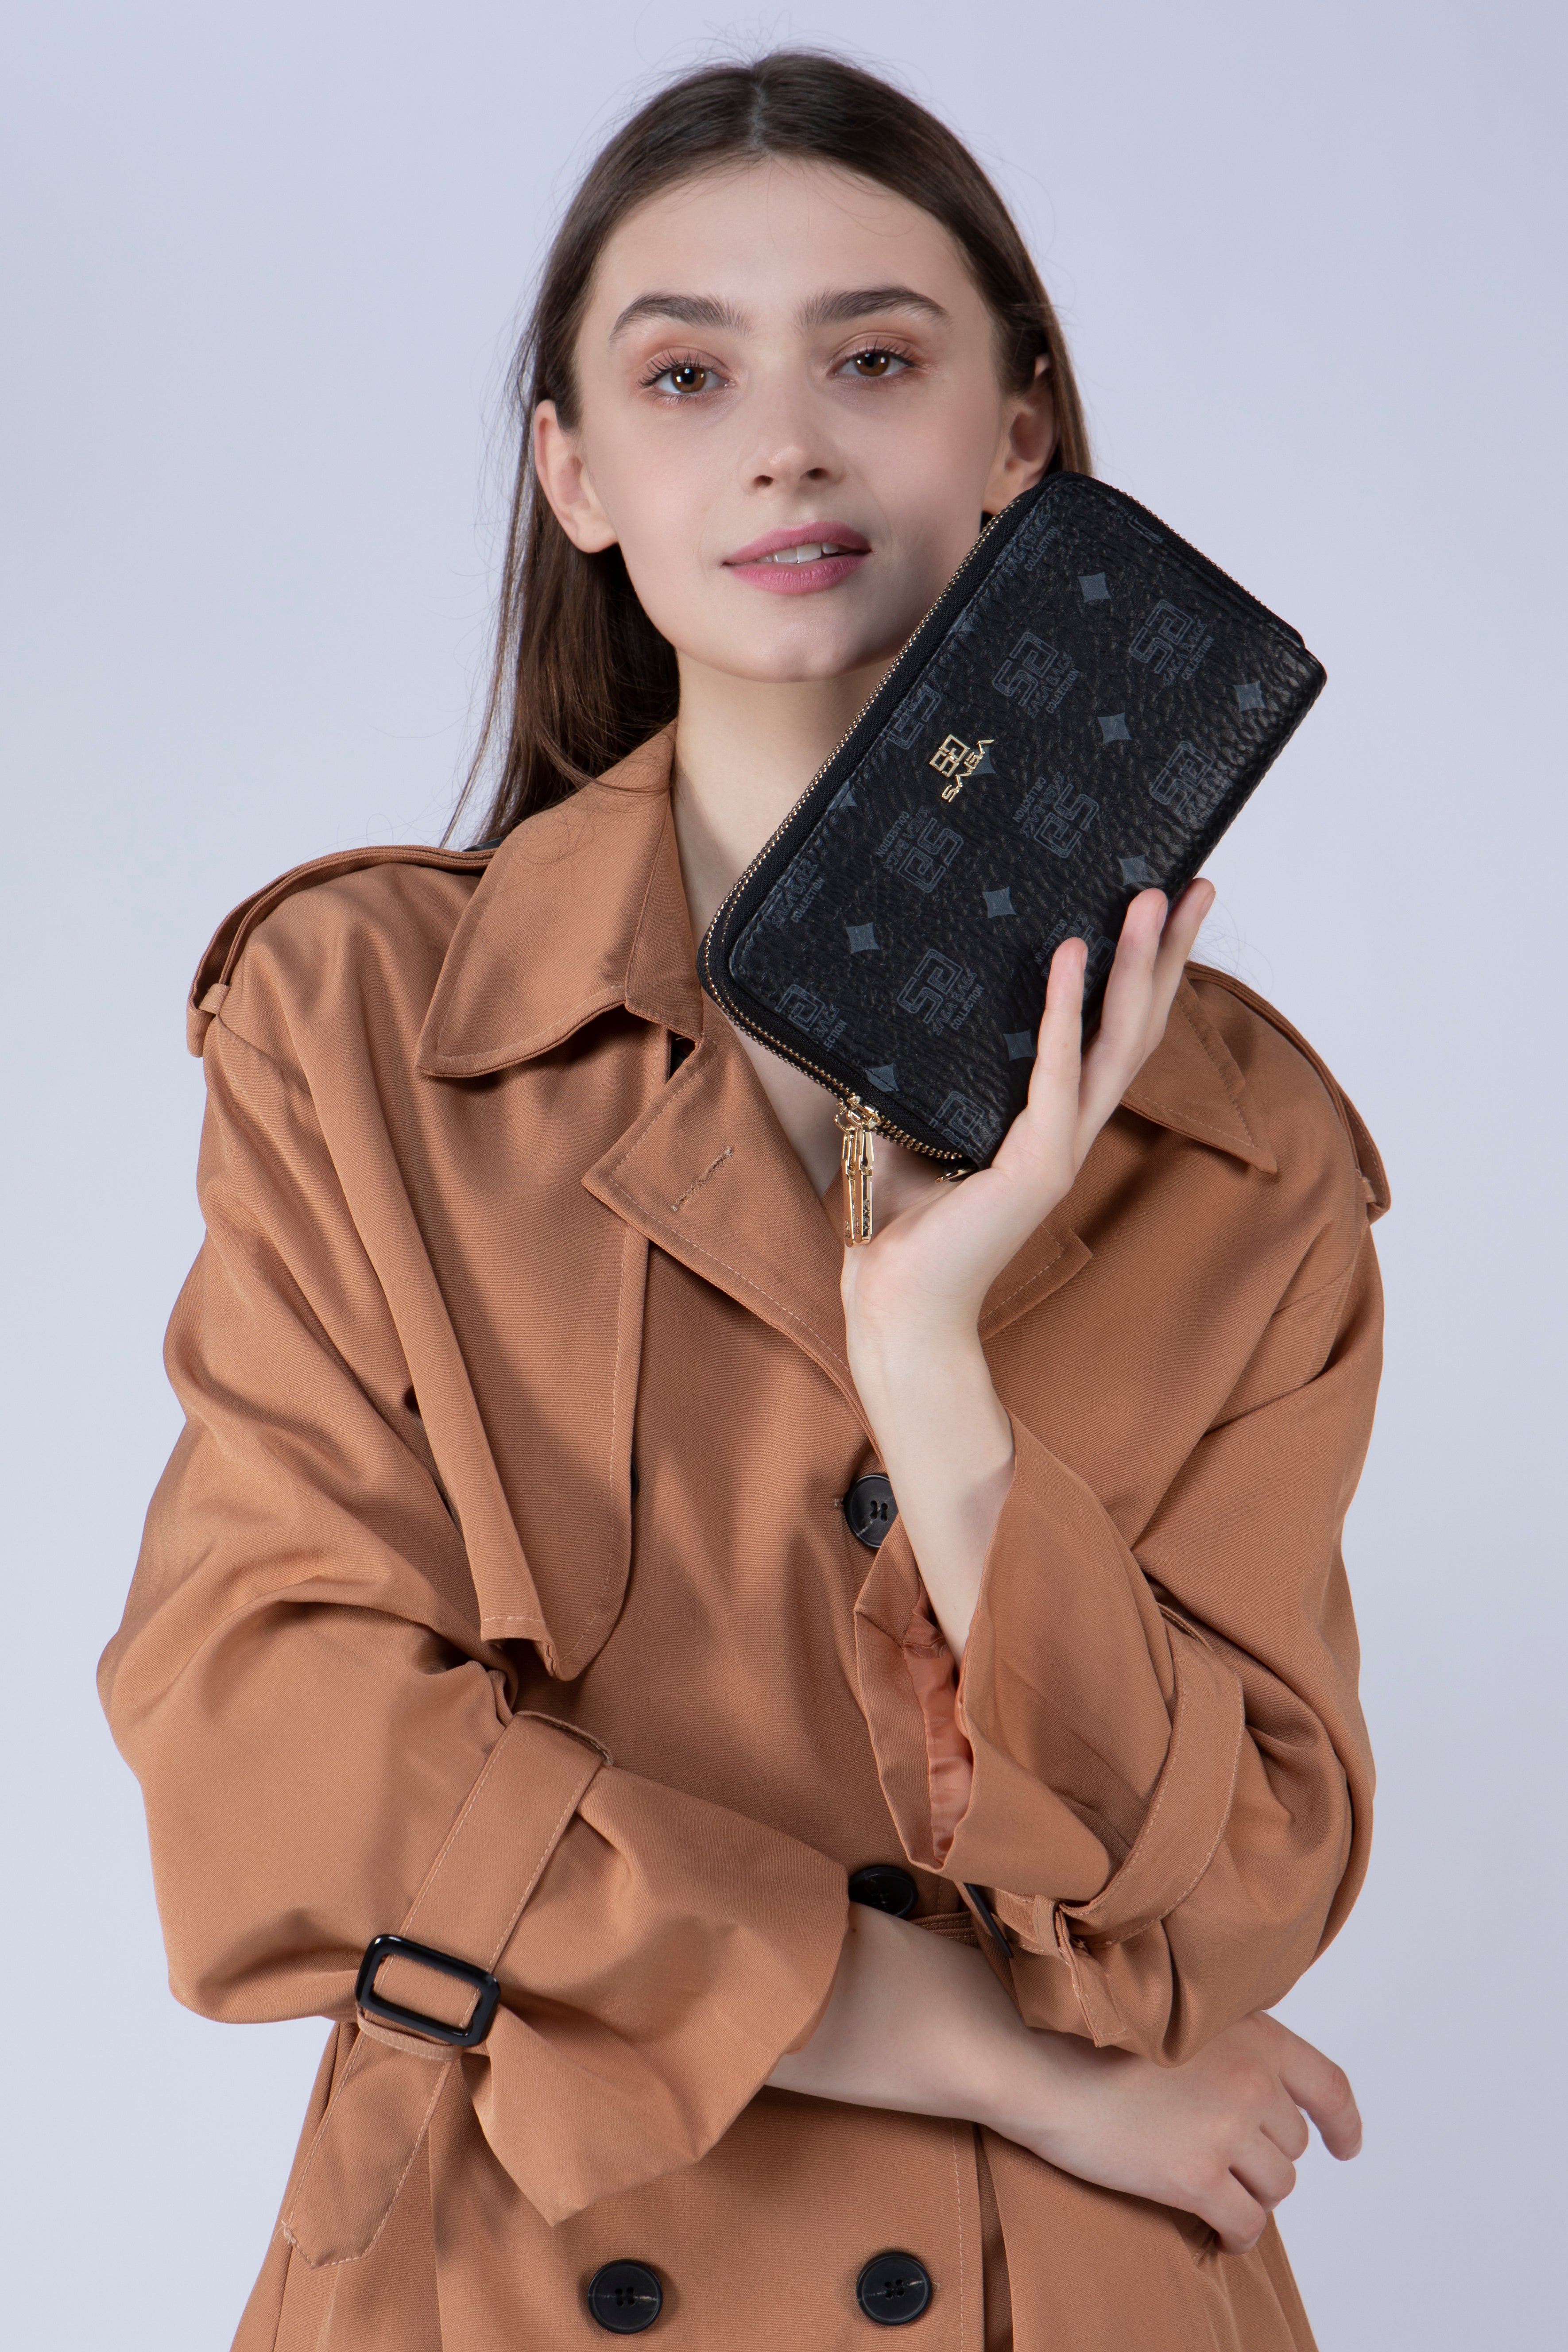 بنت تحمل محفظة نسائية من ساغا لونها أسود مع شعار ساغا مطبوع على المحفظة 